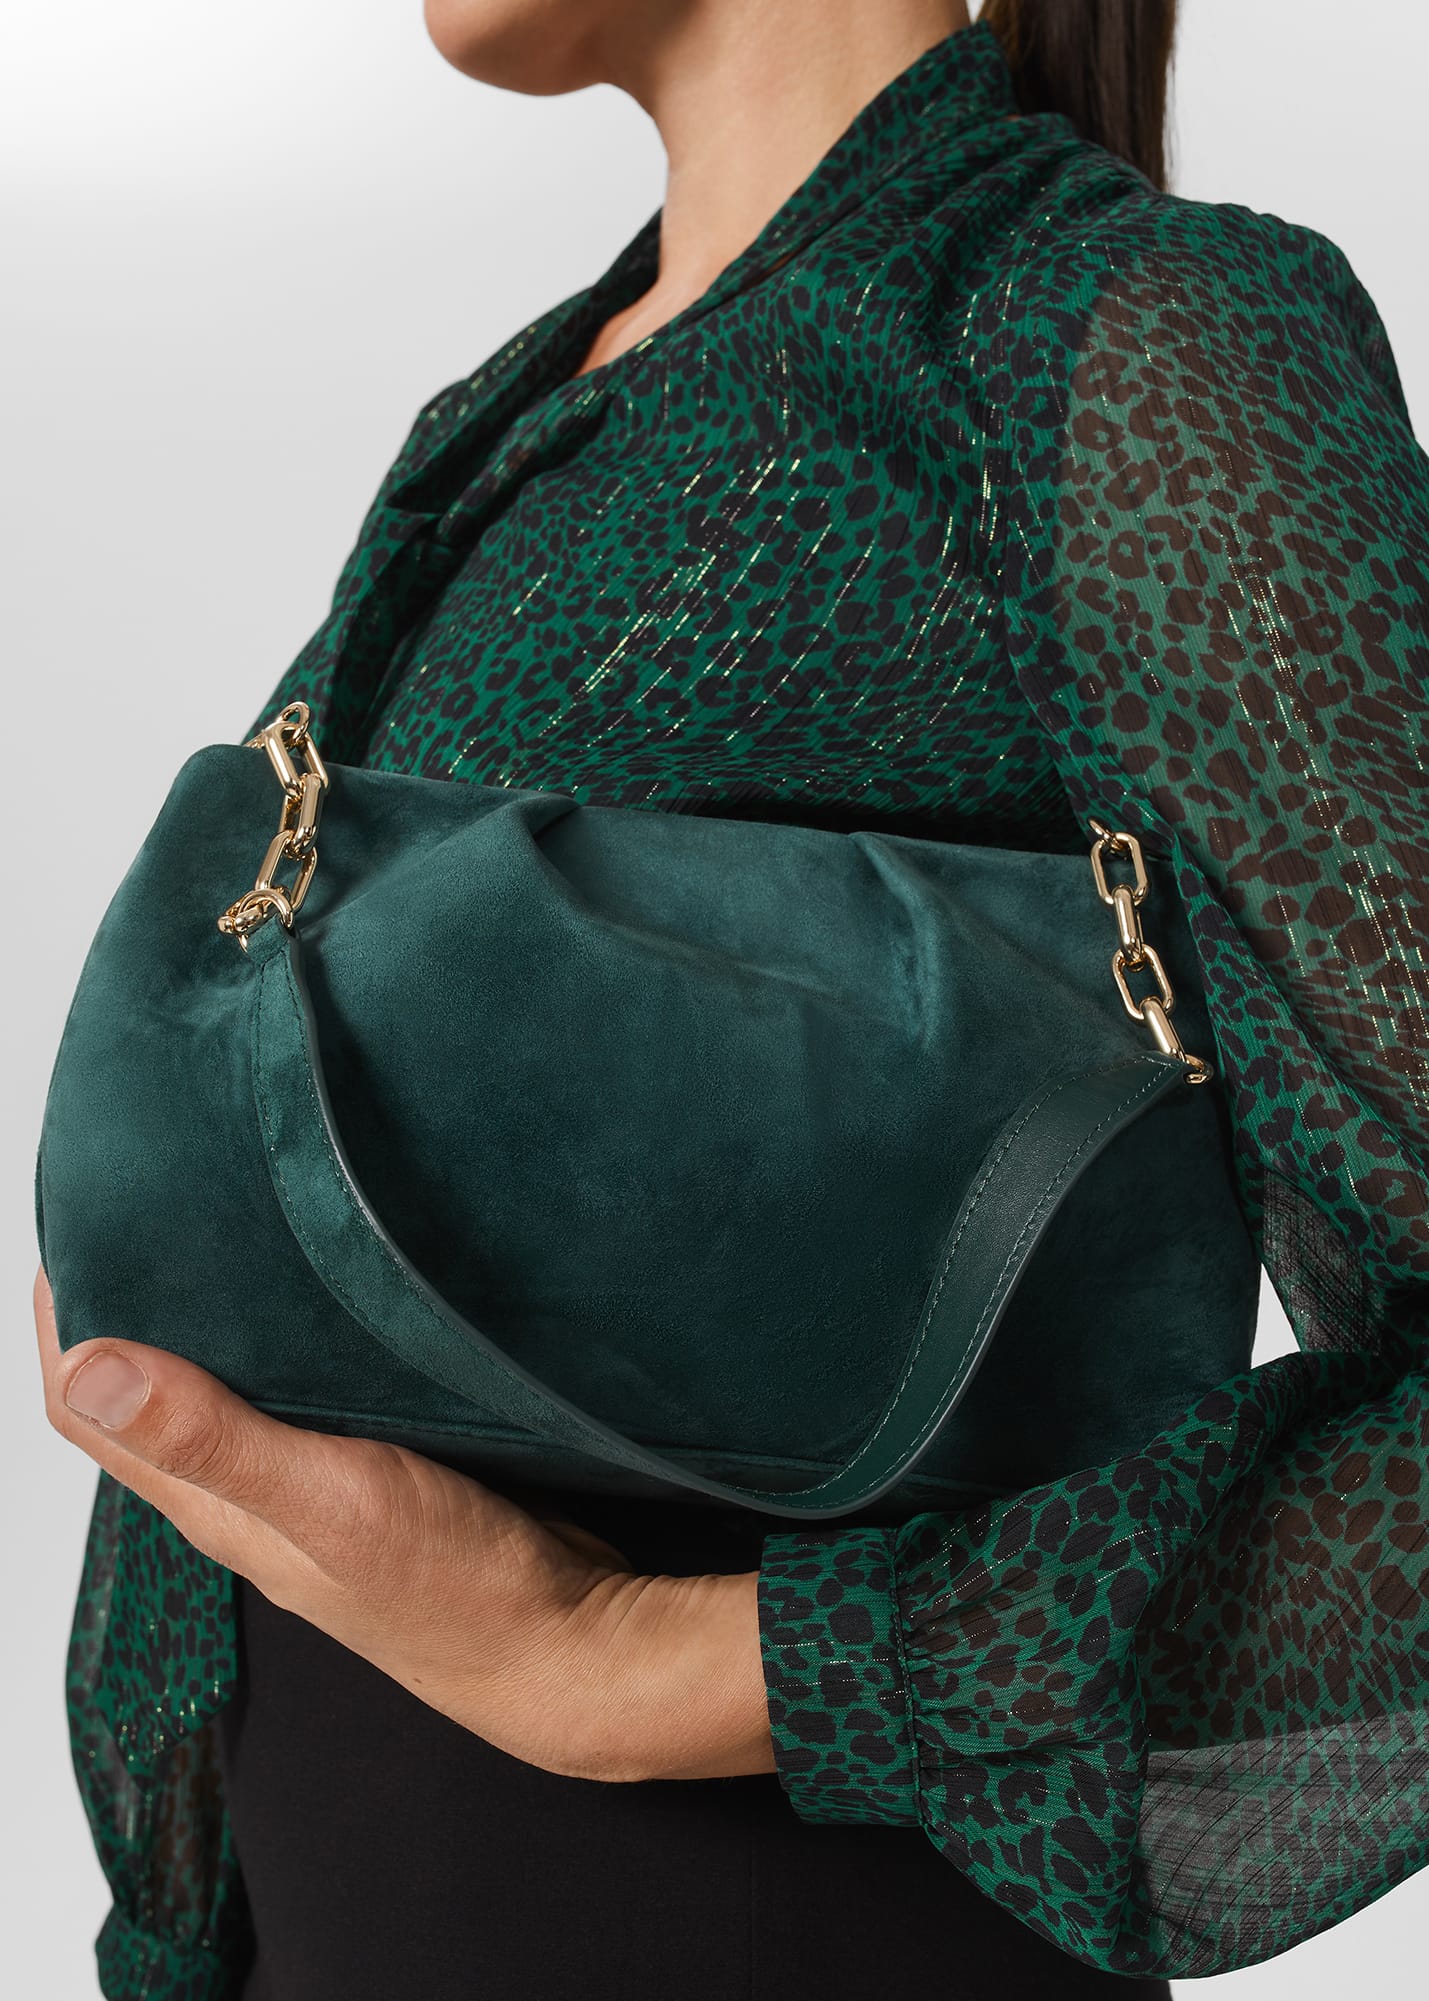 Hobbs Women's Clifton Clutch Bag - Evergreen